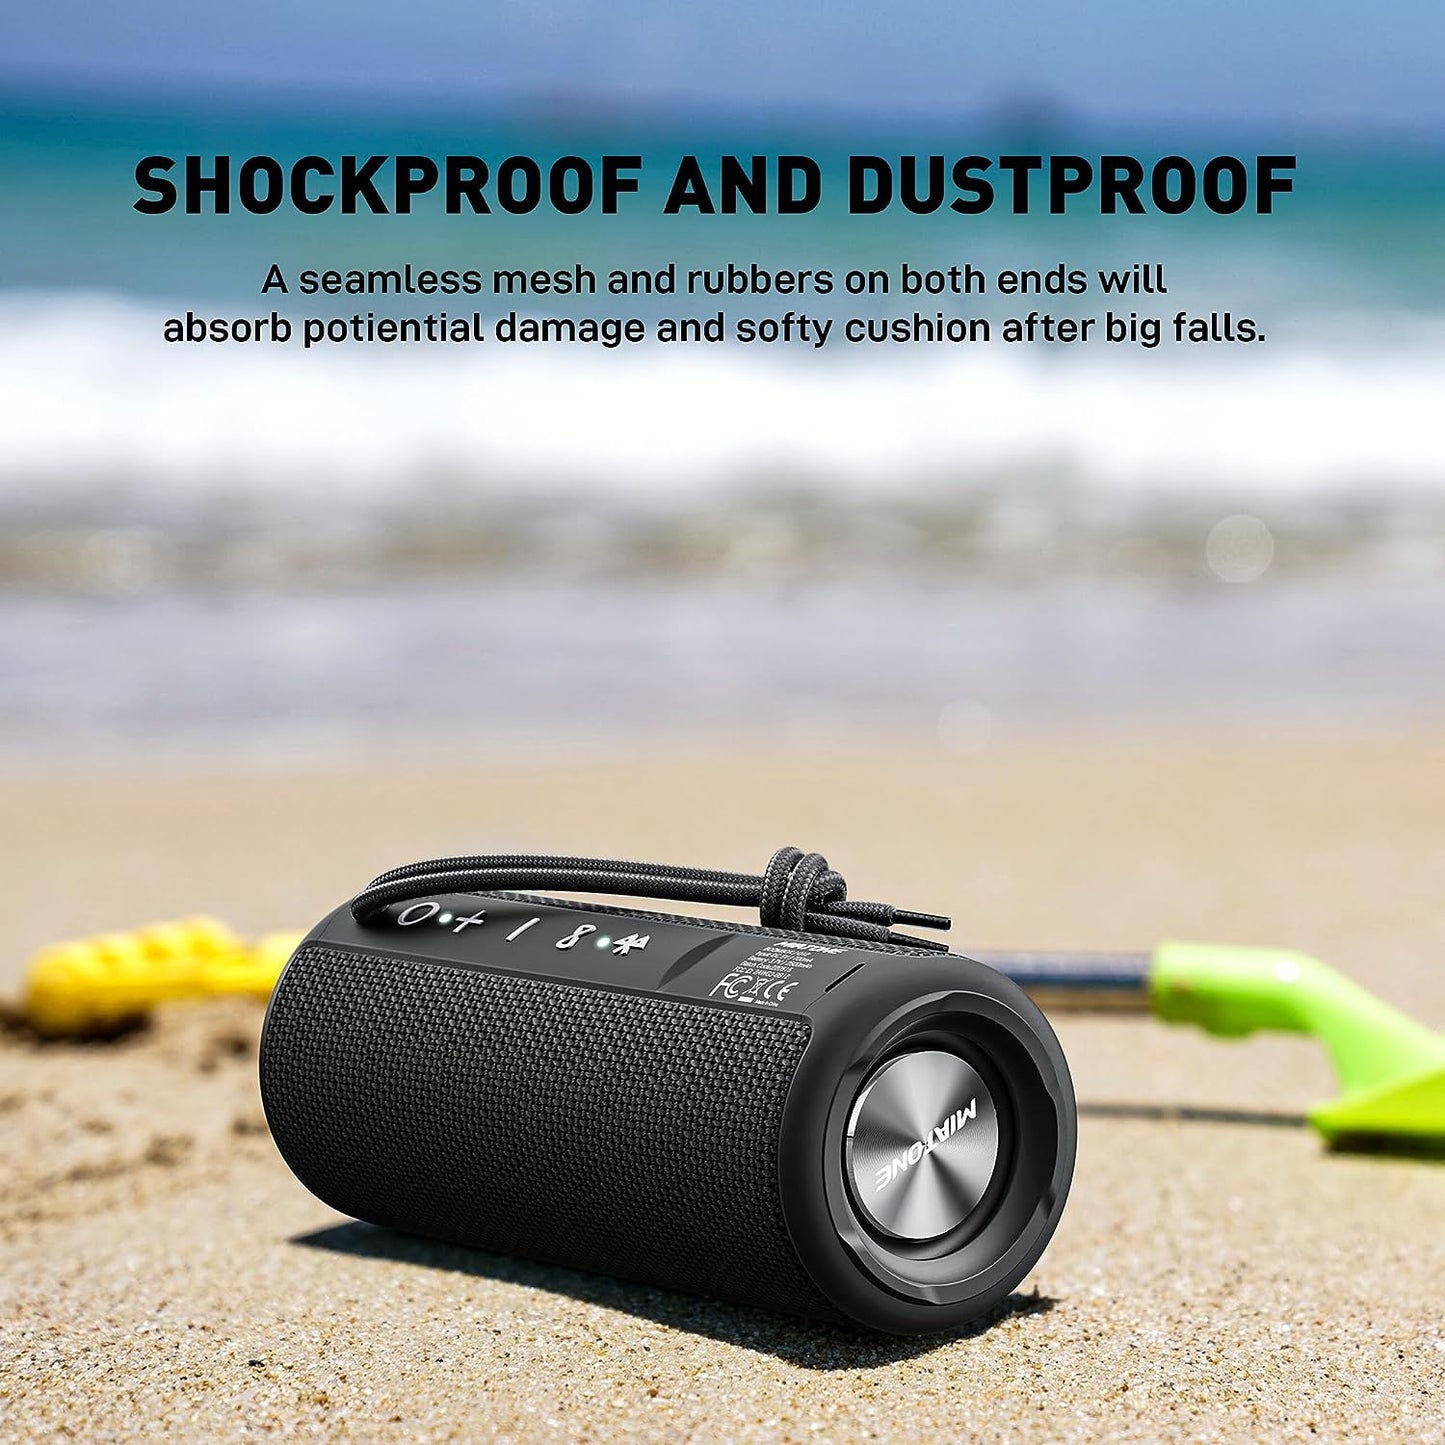 Bluetooth Speakers, Waterproof and Portable Outdoor Wireless Speaker (Black)